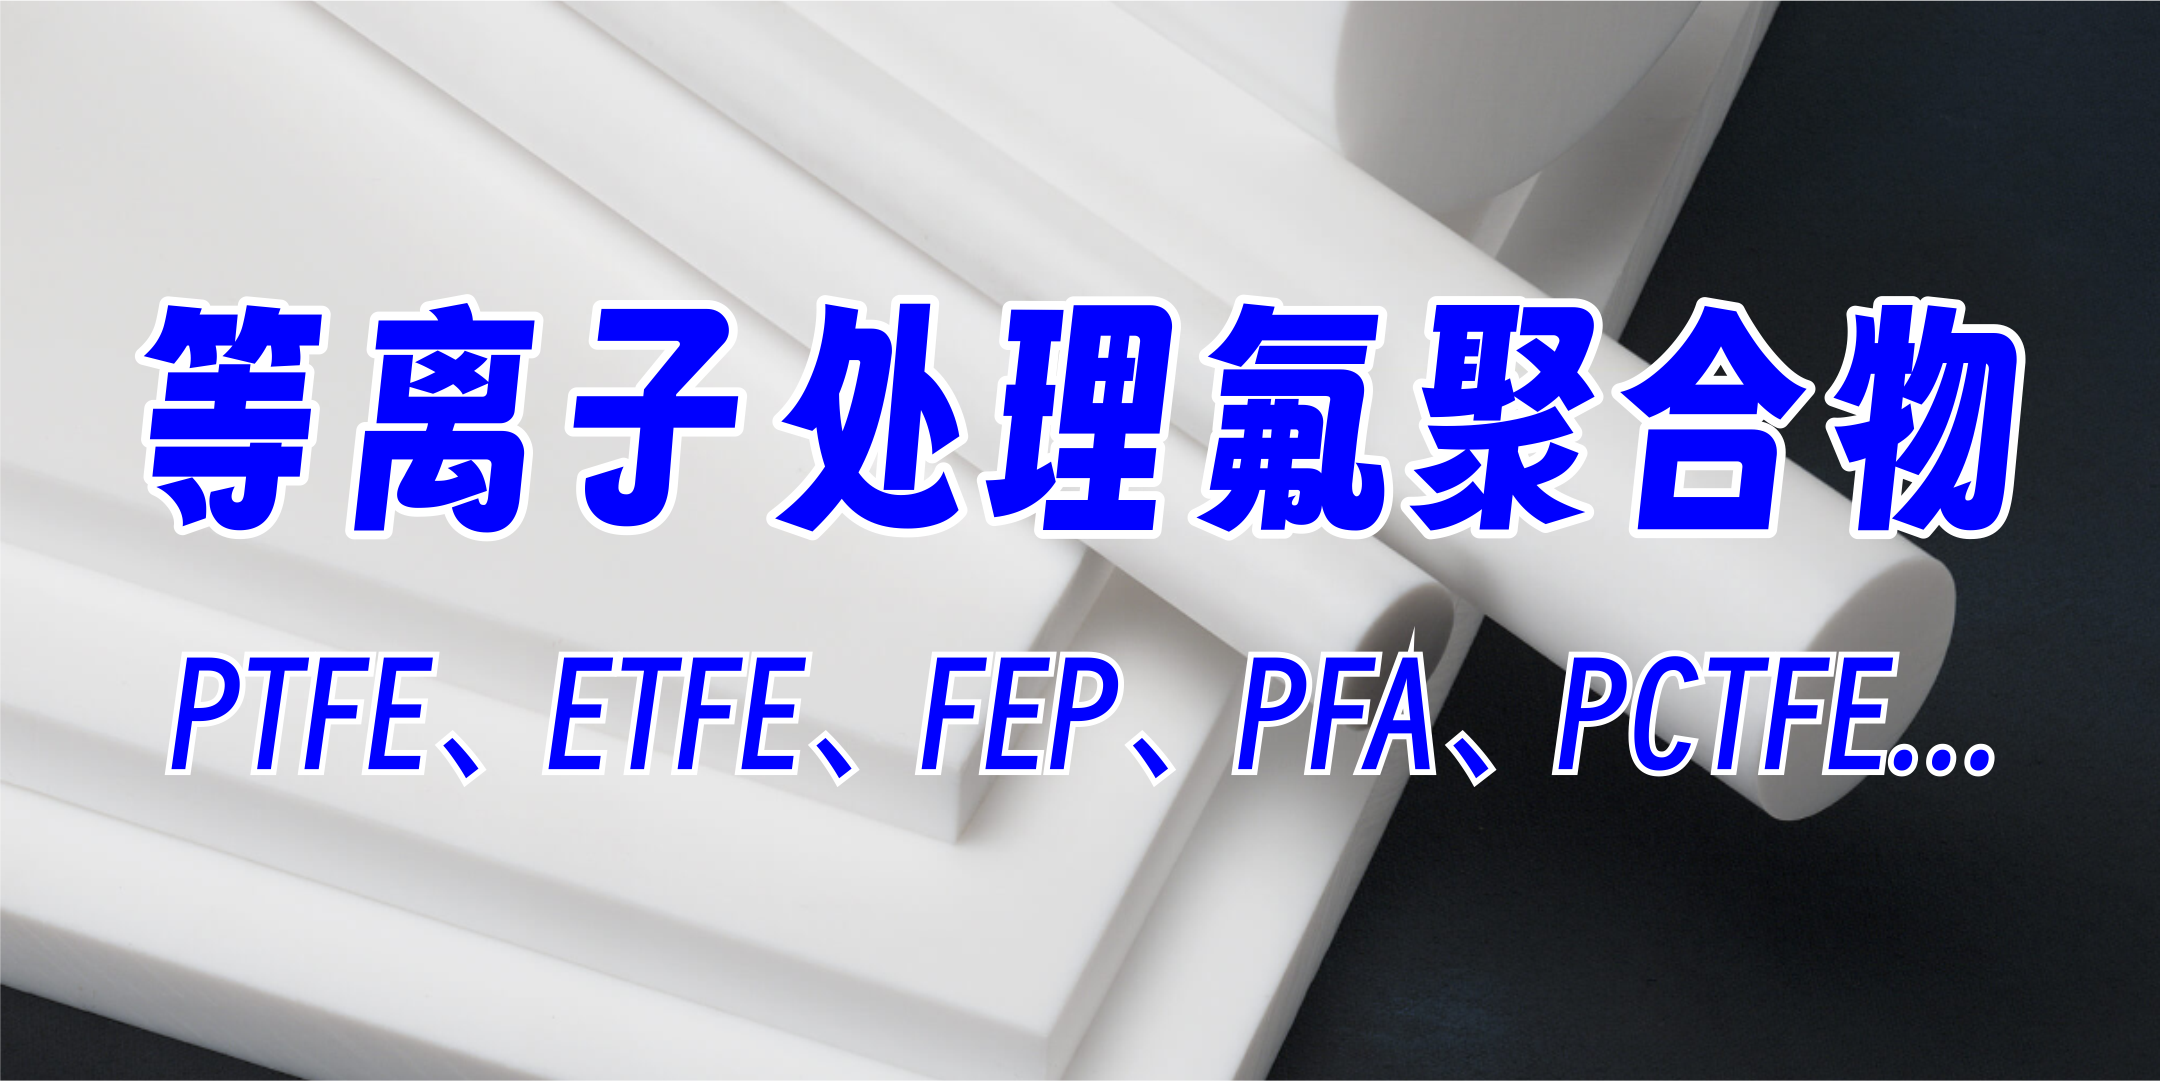 PTFE聚四氟乙烯等離子處理，提高粘接附著力、親水性，氟聚合物材料等離子處理，提升達因值